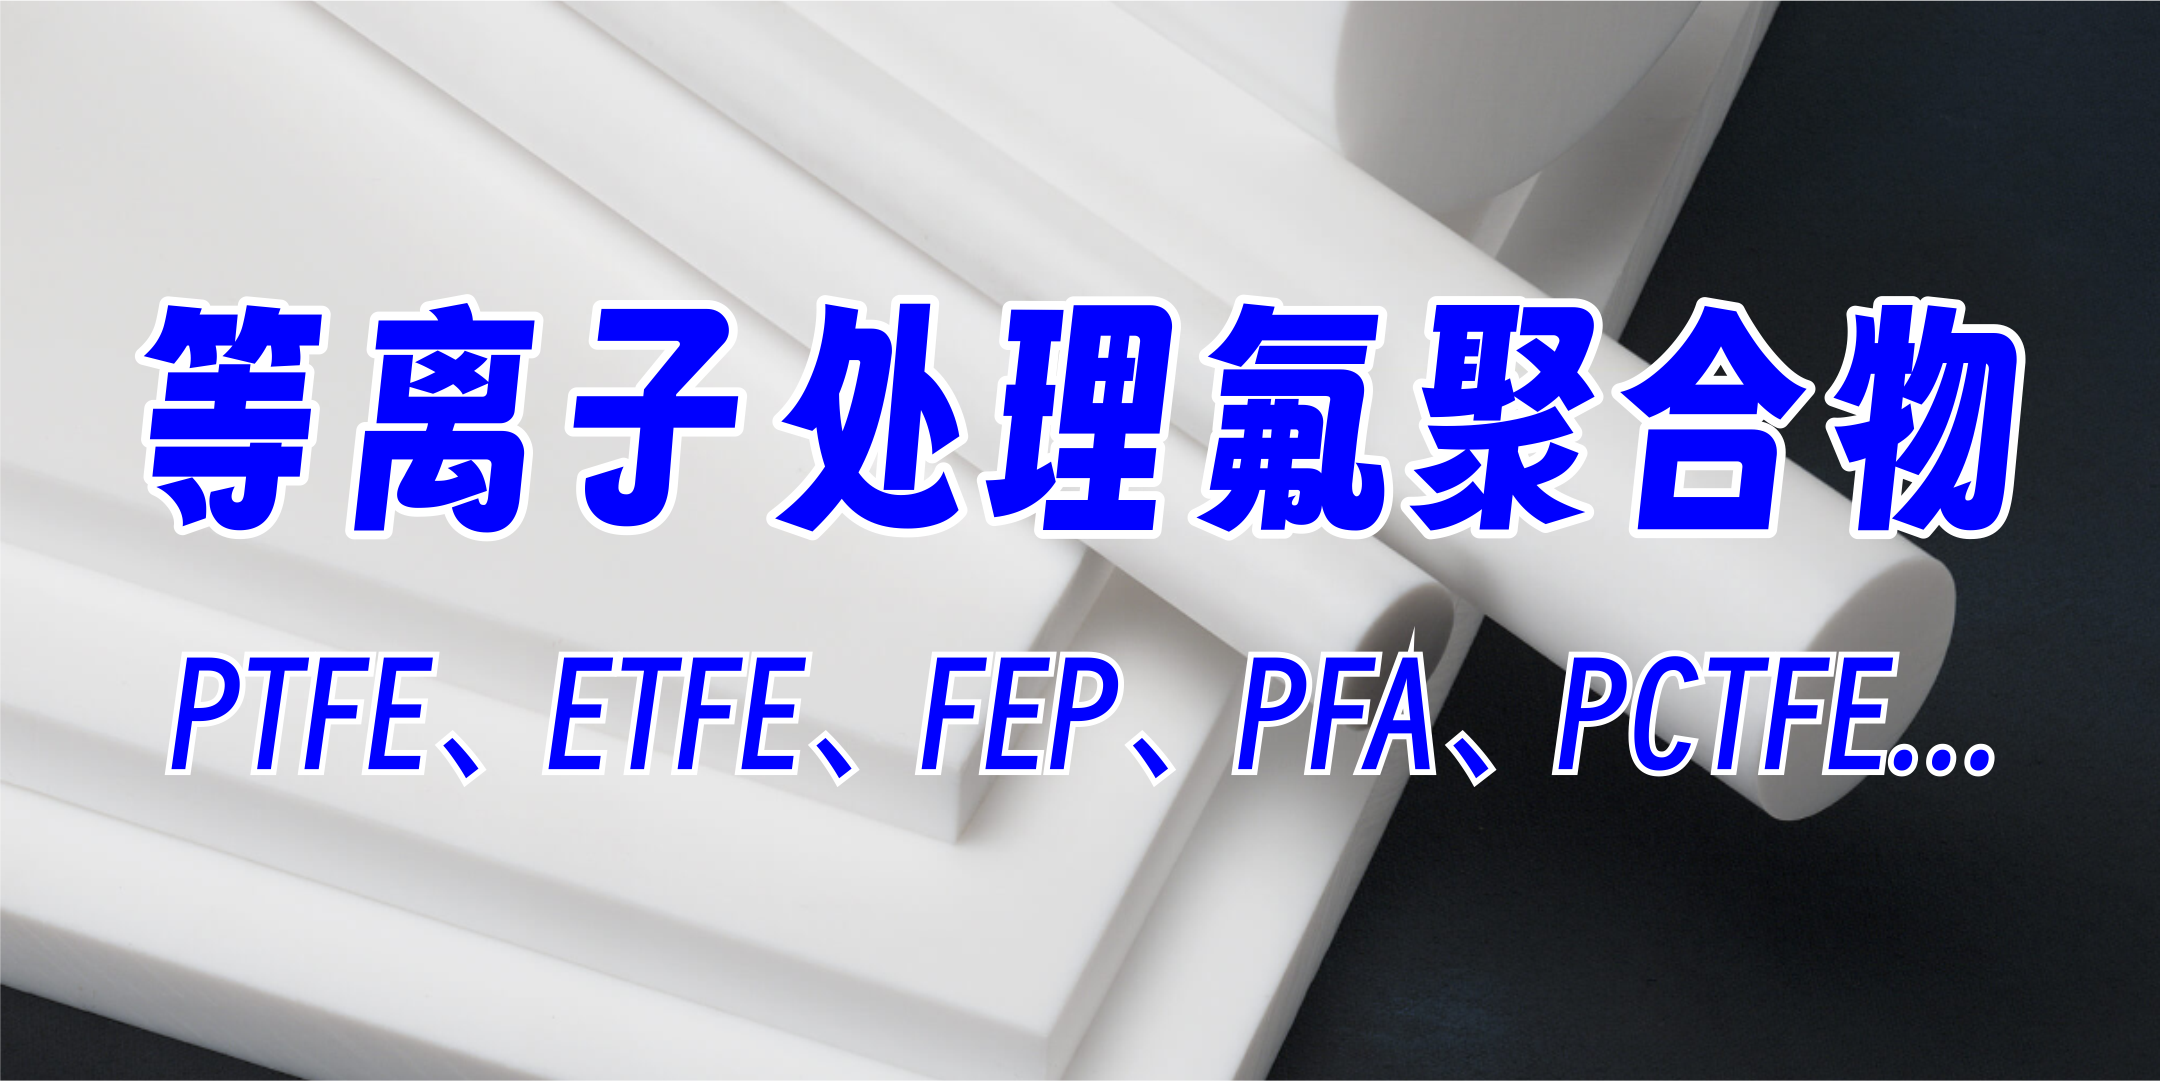 PTFE聚四氟乙烯等離子處理，提高粘接附著力、親水性，氟聚合物材料等離子處理，提升達因值